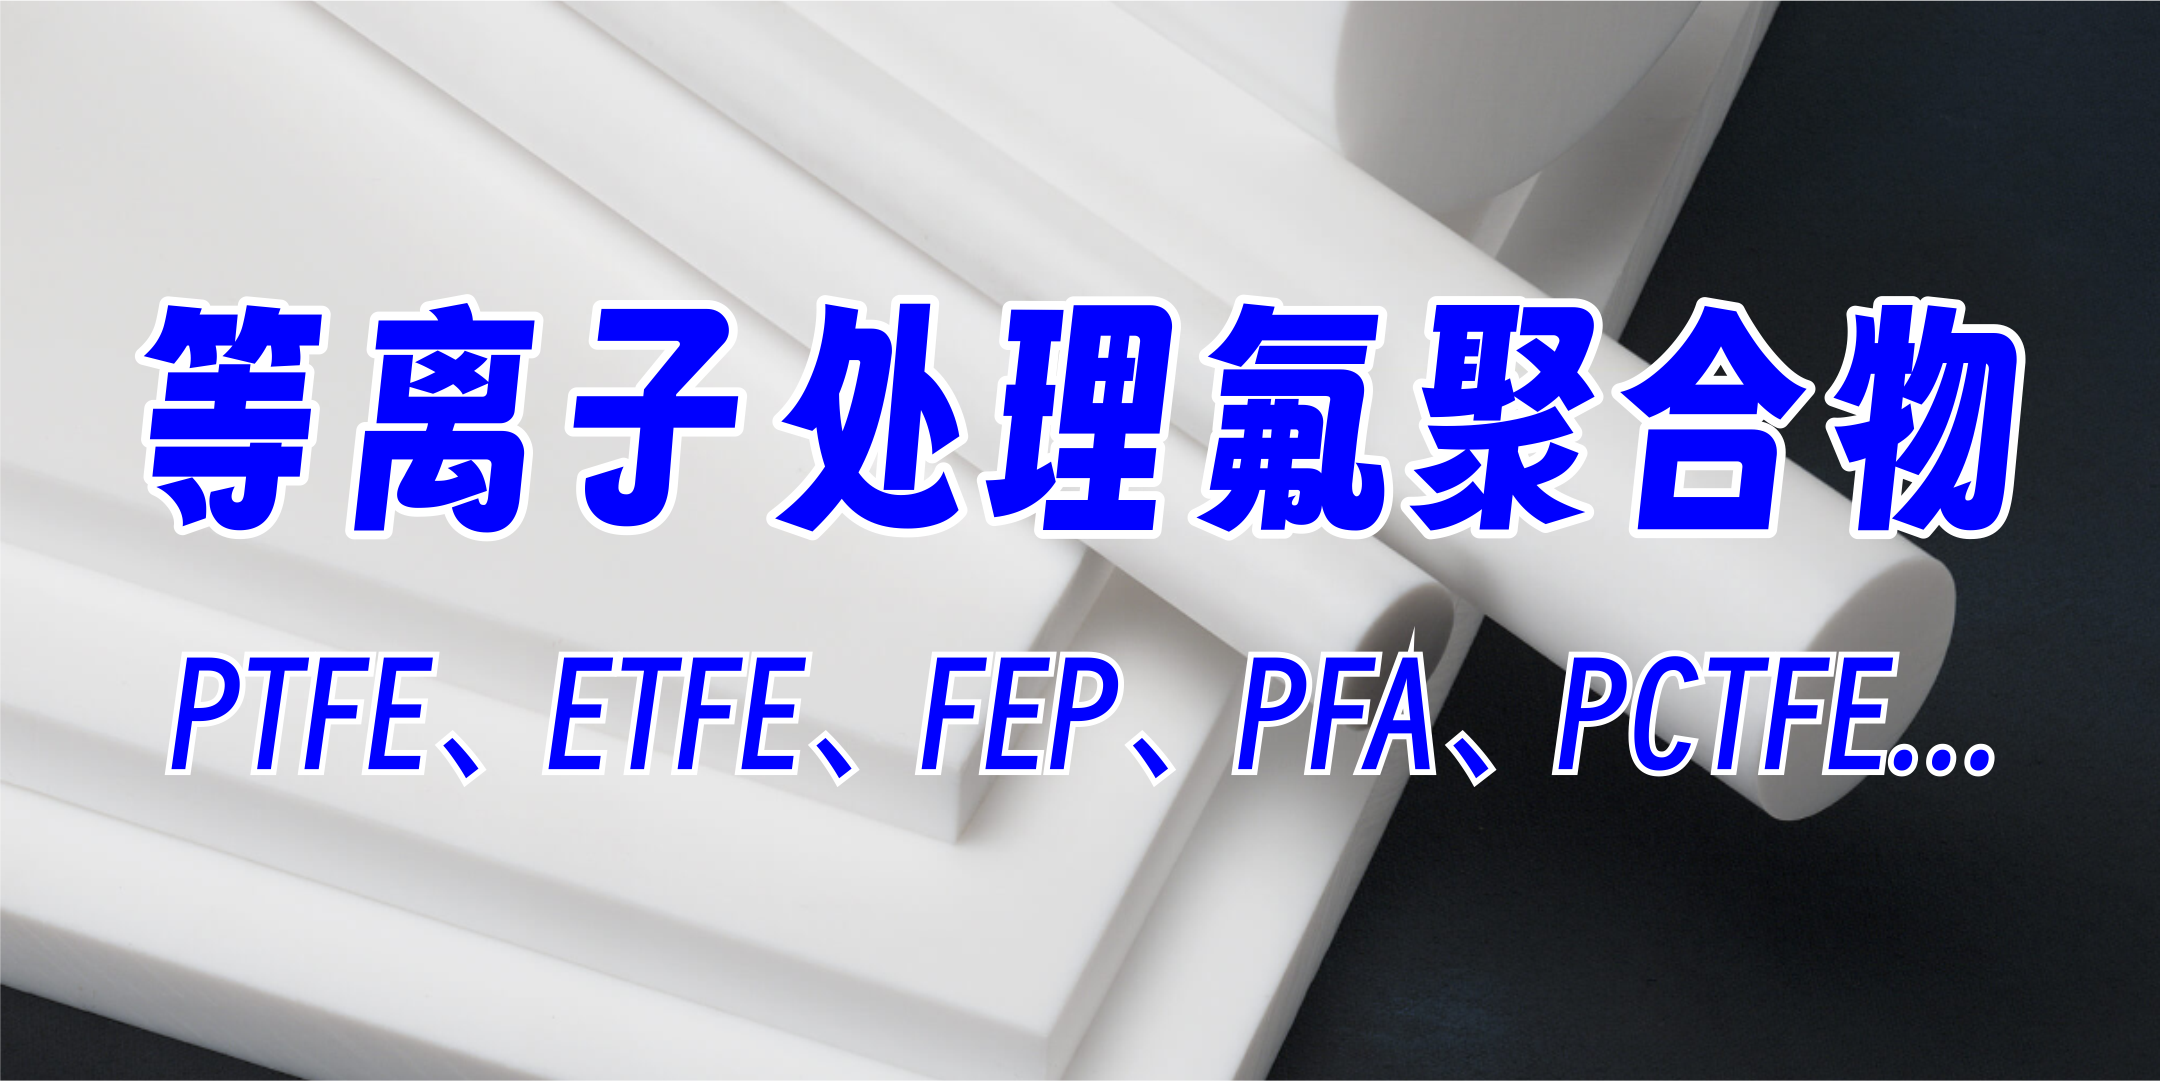 PTFE聚四氟乙烯等離子處理，提高粘接附著力、親水性，氟聚合物材料等離子處理，提升達因值